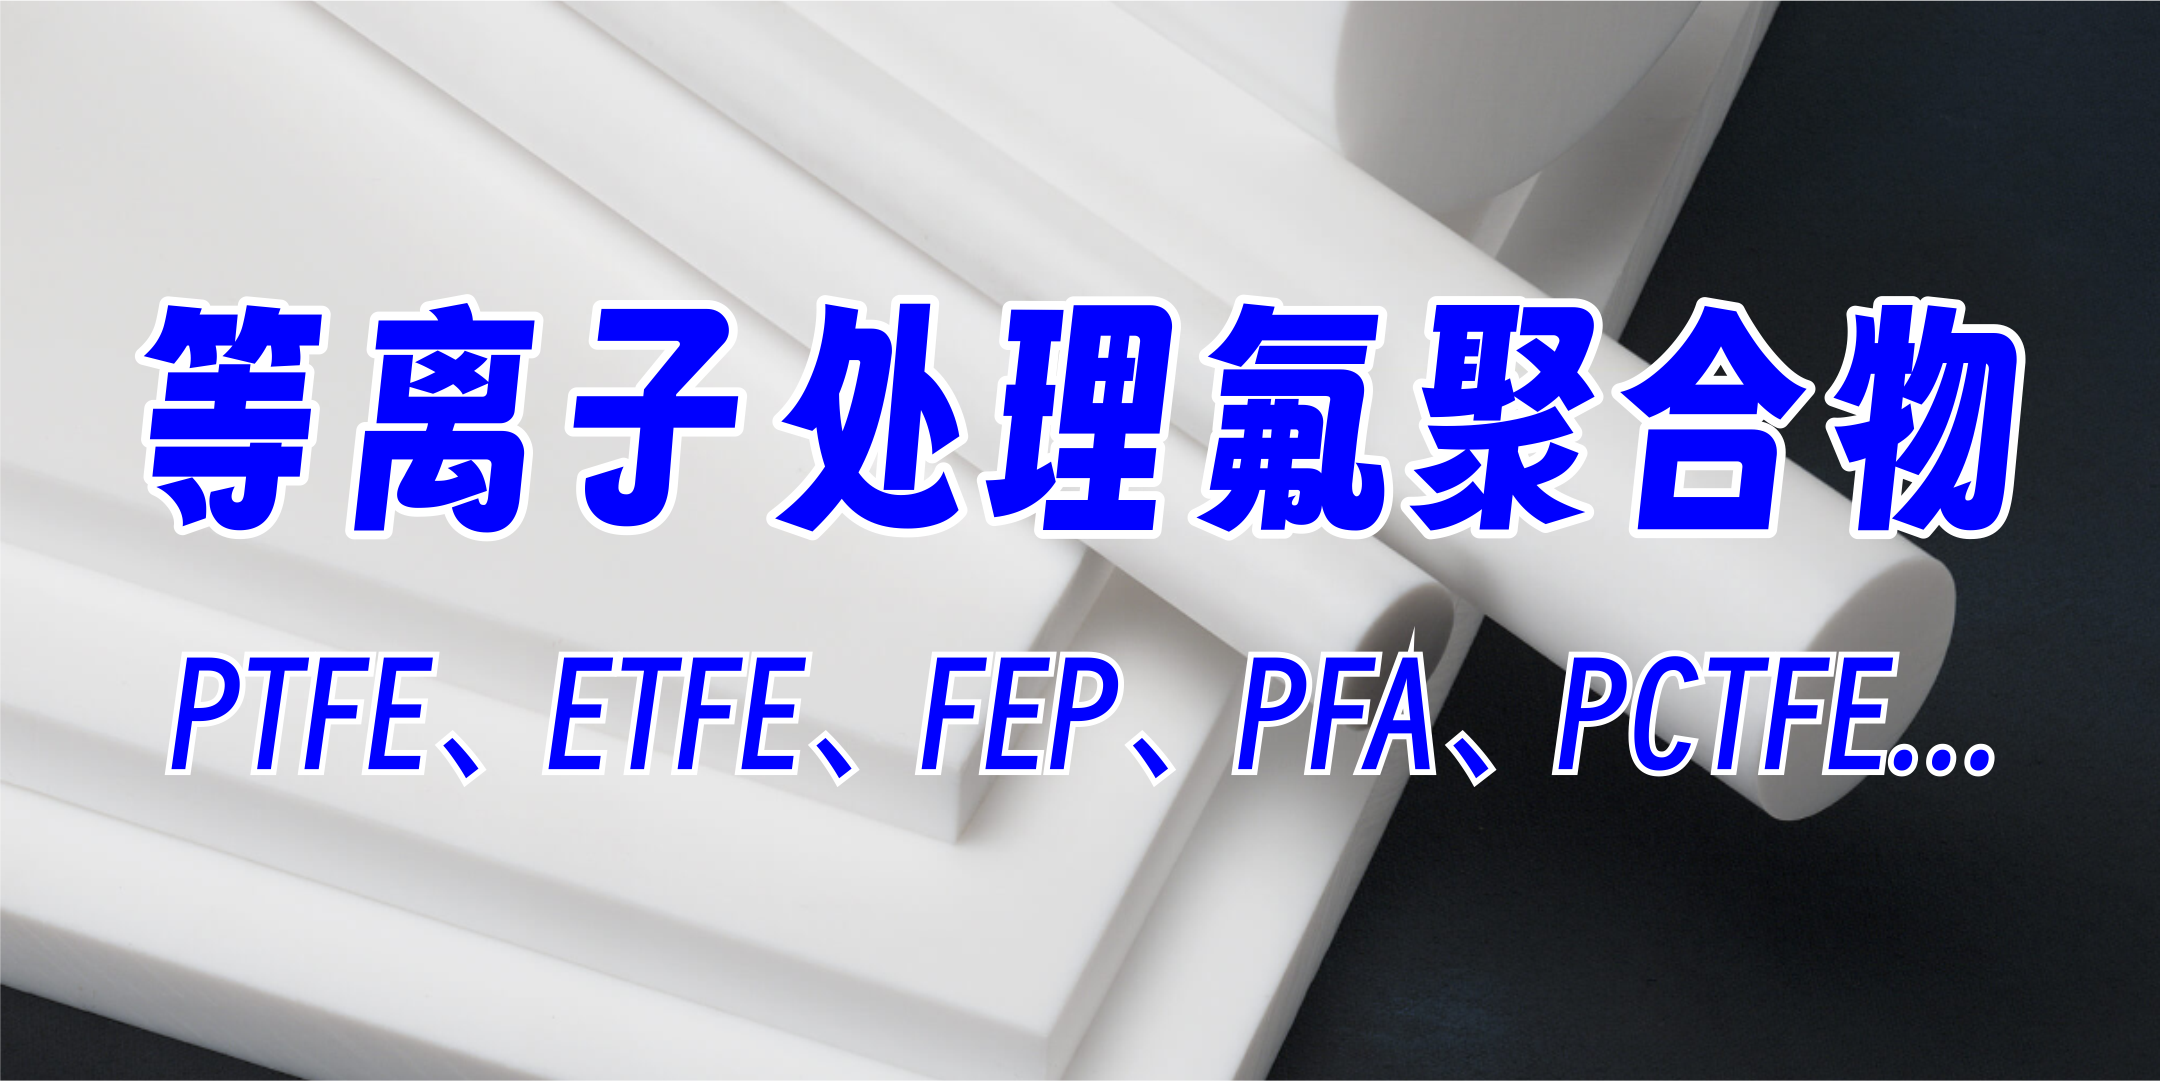 PTFE聚四氟乙烯等離子處理，提高粘接附著力、親水性，氟聚合物材料等離子處理，提升達因值